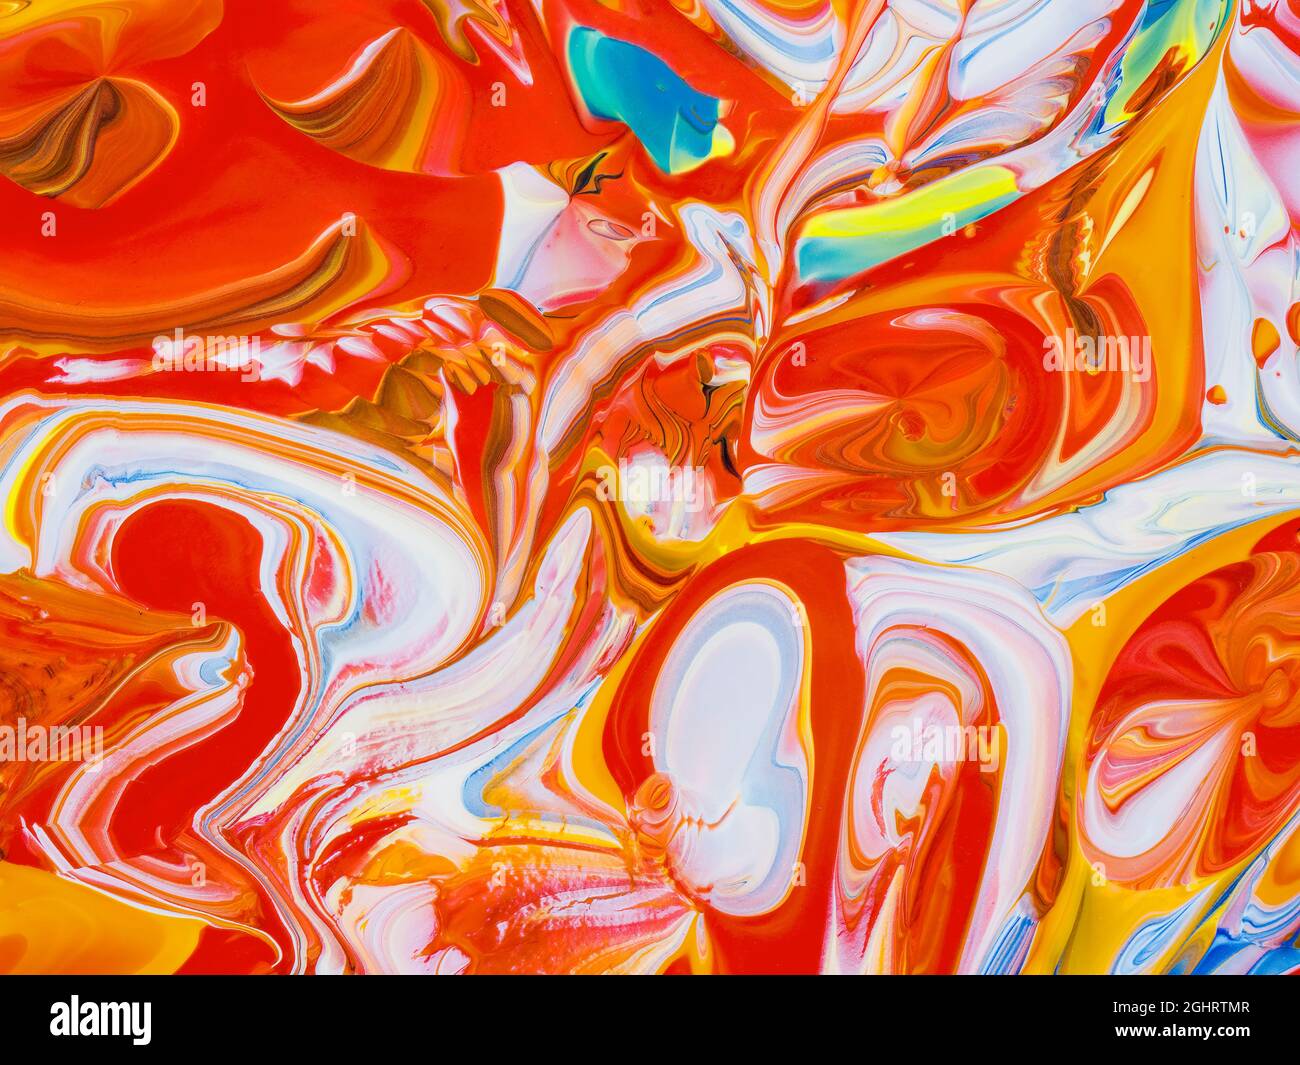 Immagine astratta di vari colori di vernice acrilica mescolati insieme  utilizzando una tecnica di colata di vernice Foto stock - Alamy